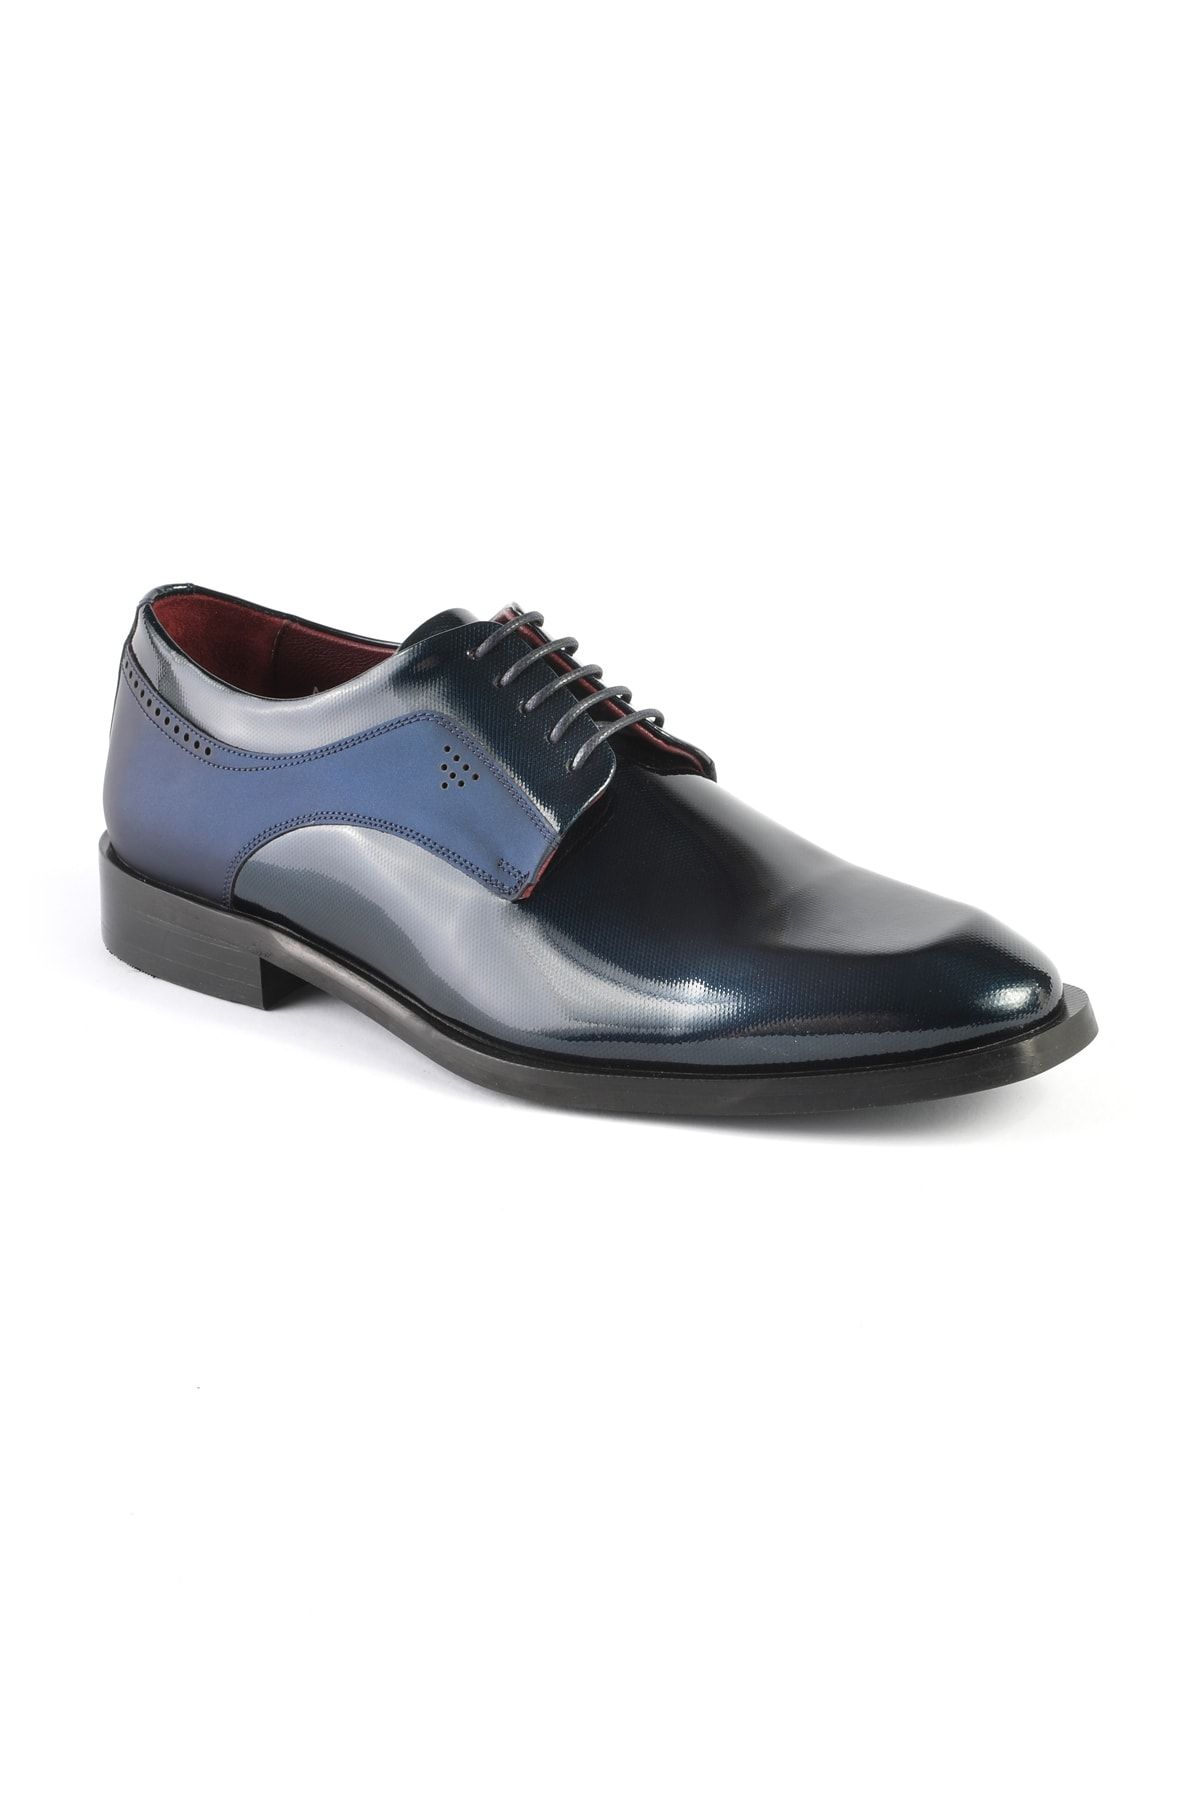 Libero 3252 Klasik Erkek Ayakkabı Lacivert